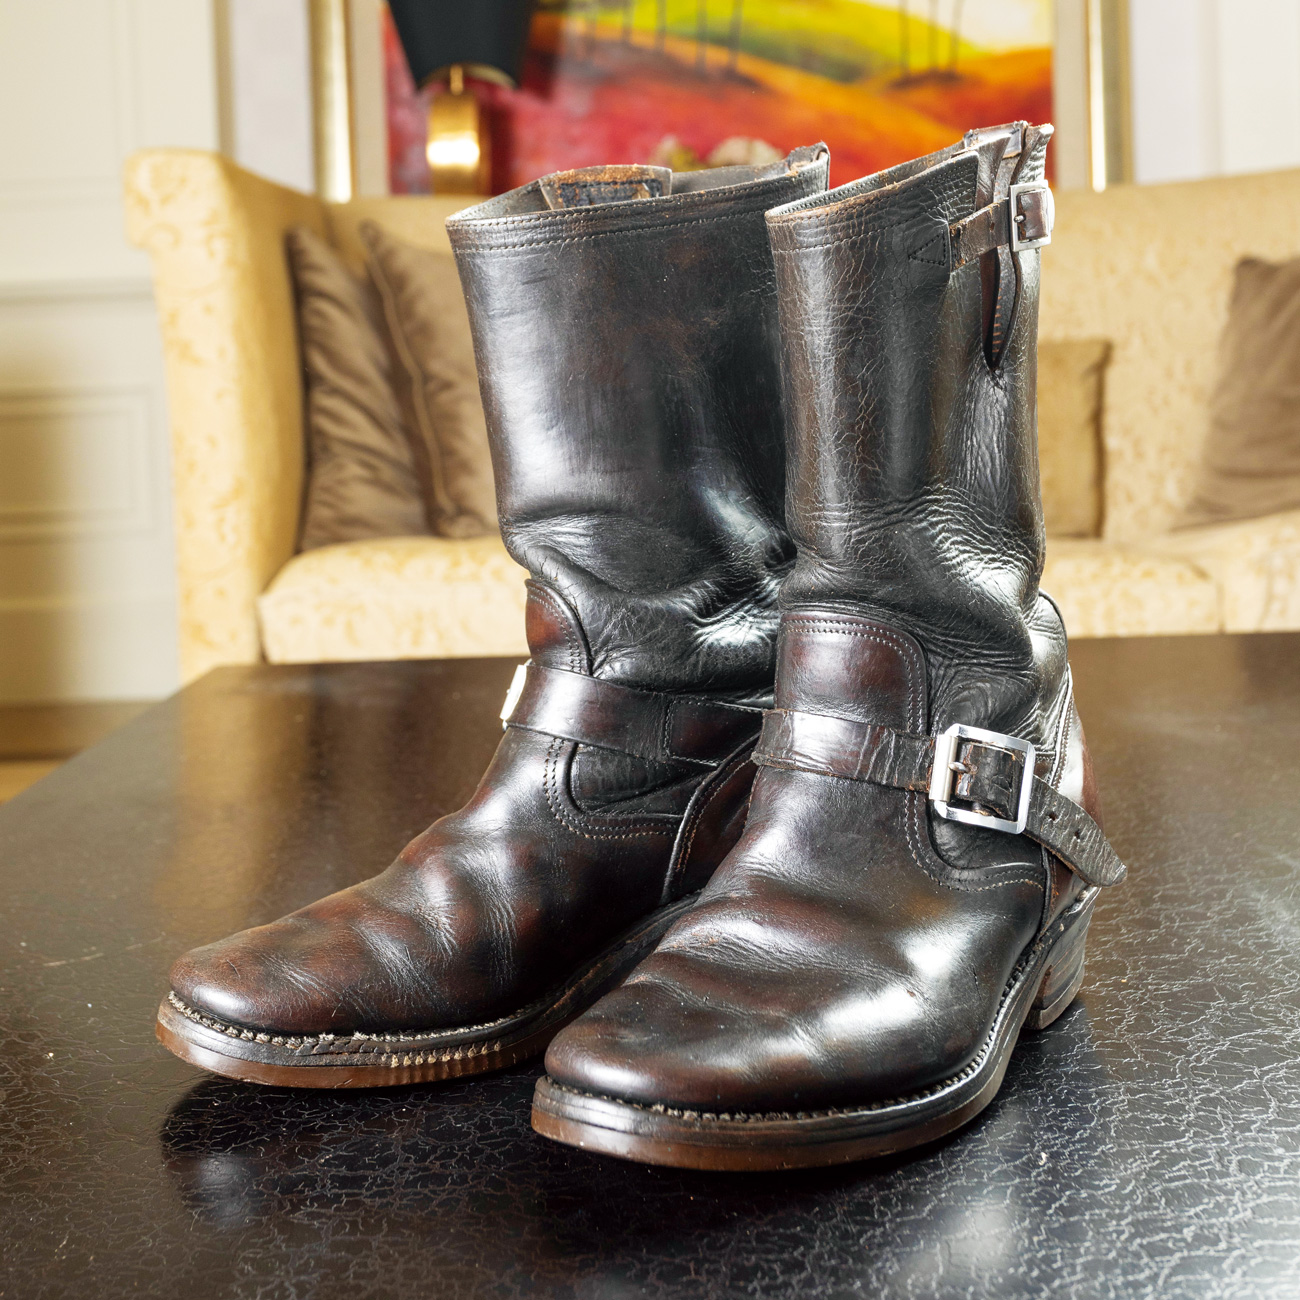 Chippewa是美國歷史最悠久的工裝靴品牌之一，其中繩標最為高檔。此件即為擁有70年歷史的繩標骨董靴款。（攝影：劉煜仕）